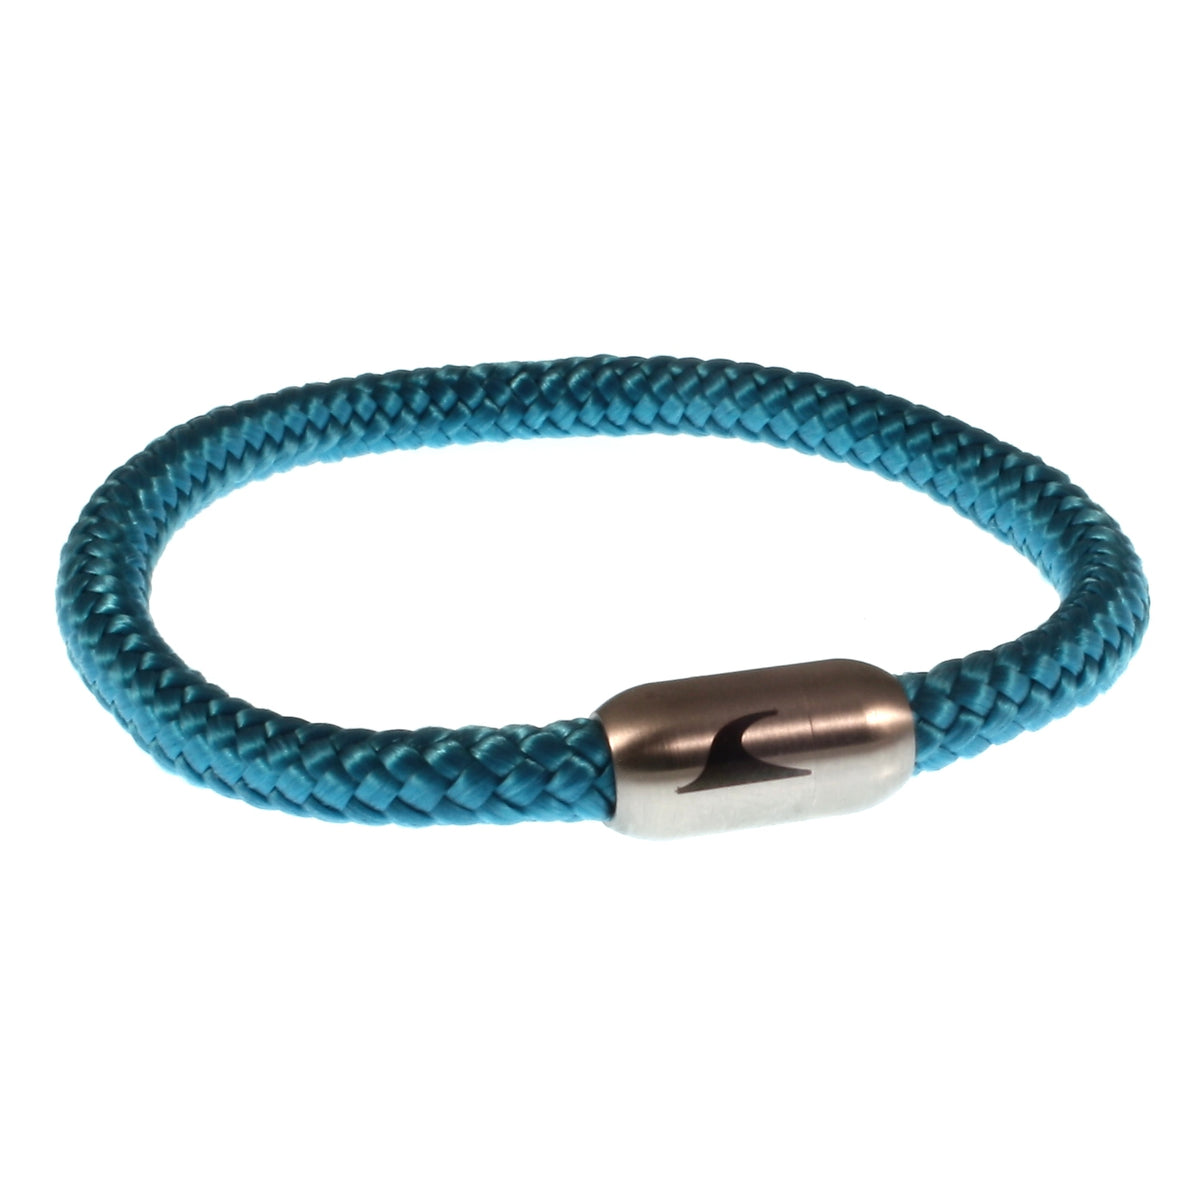 Herren-segeltau-armband-damen-sylt-blau-silber-geflochten-Edelstahlverschluss-vorn-wavepirate-shop-st